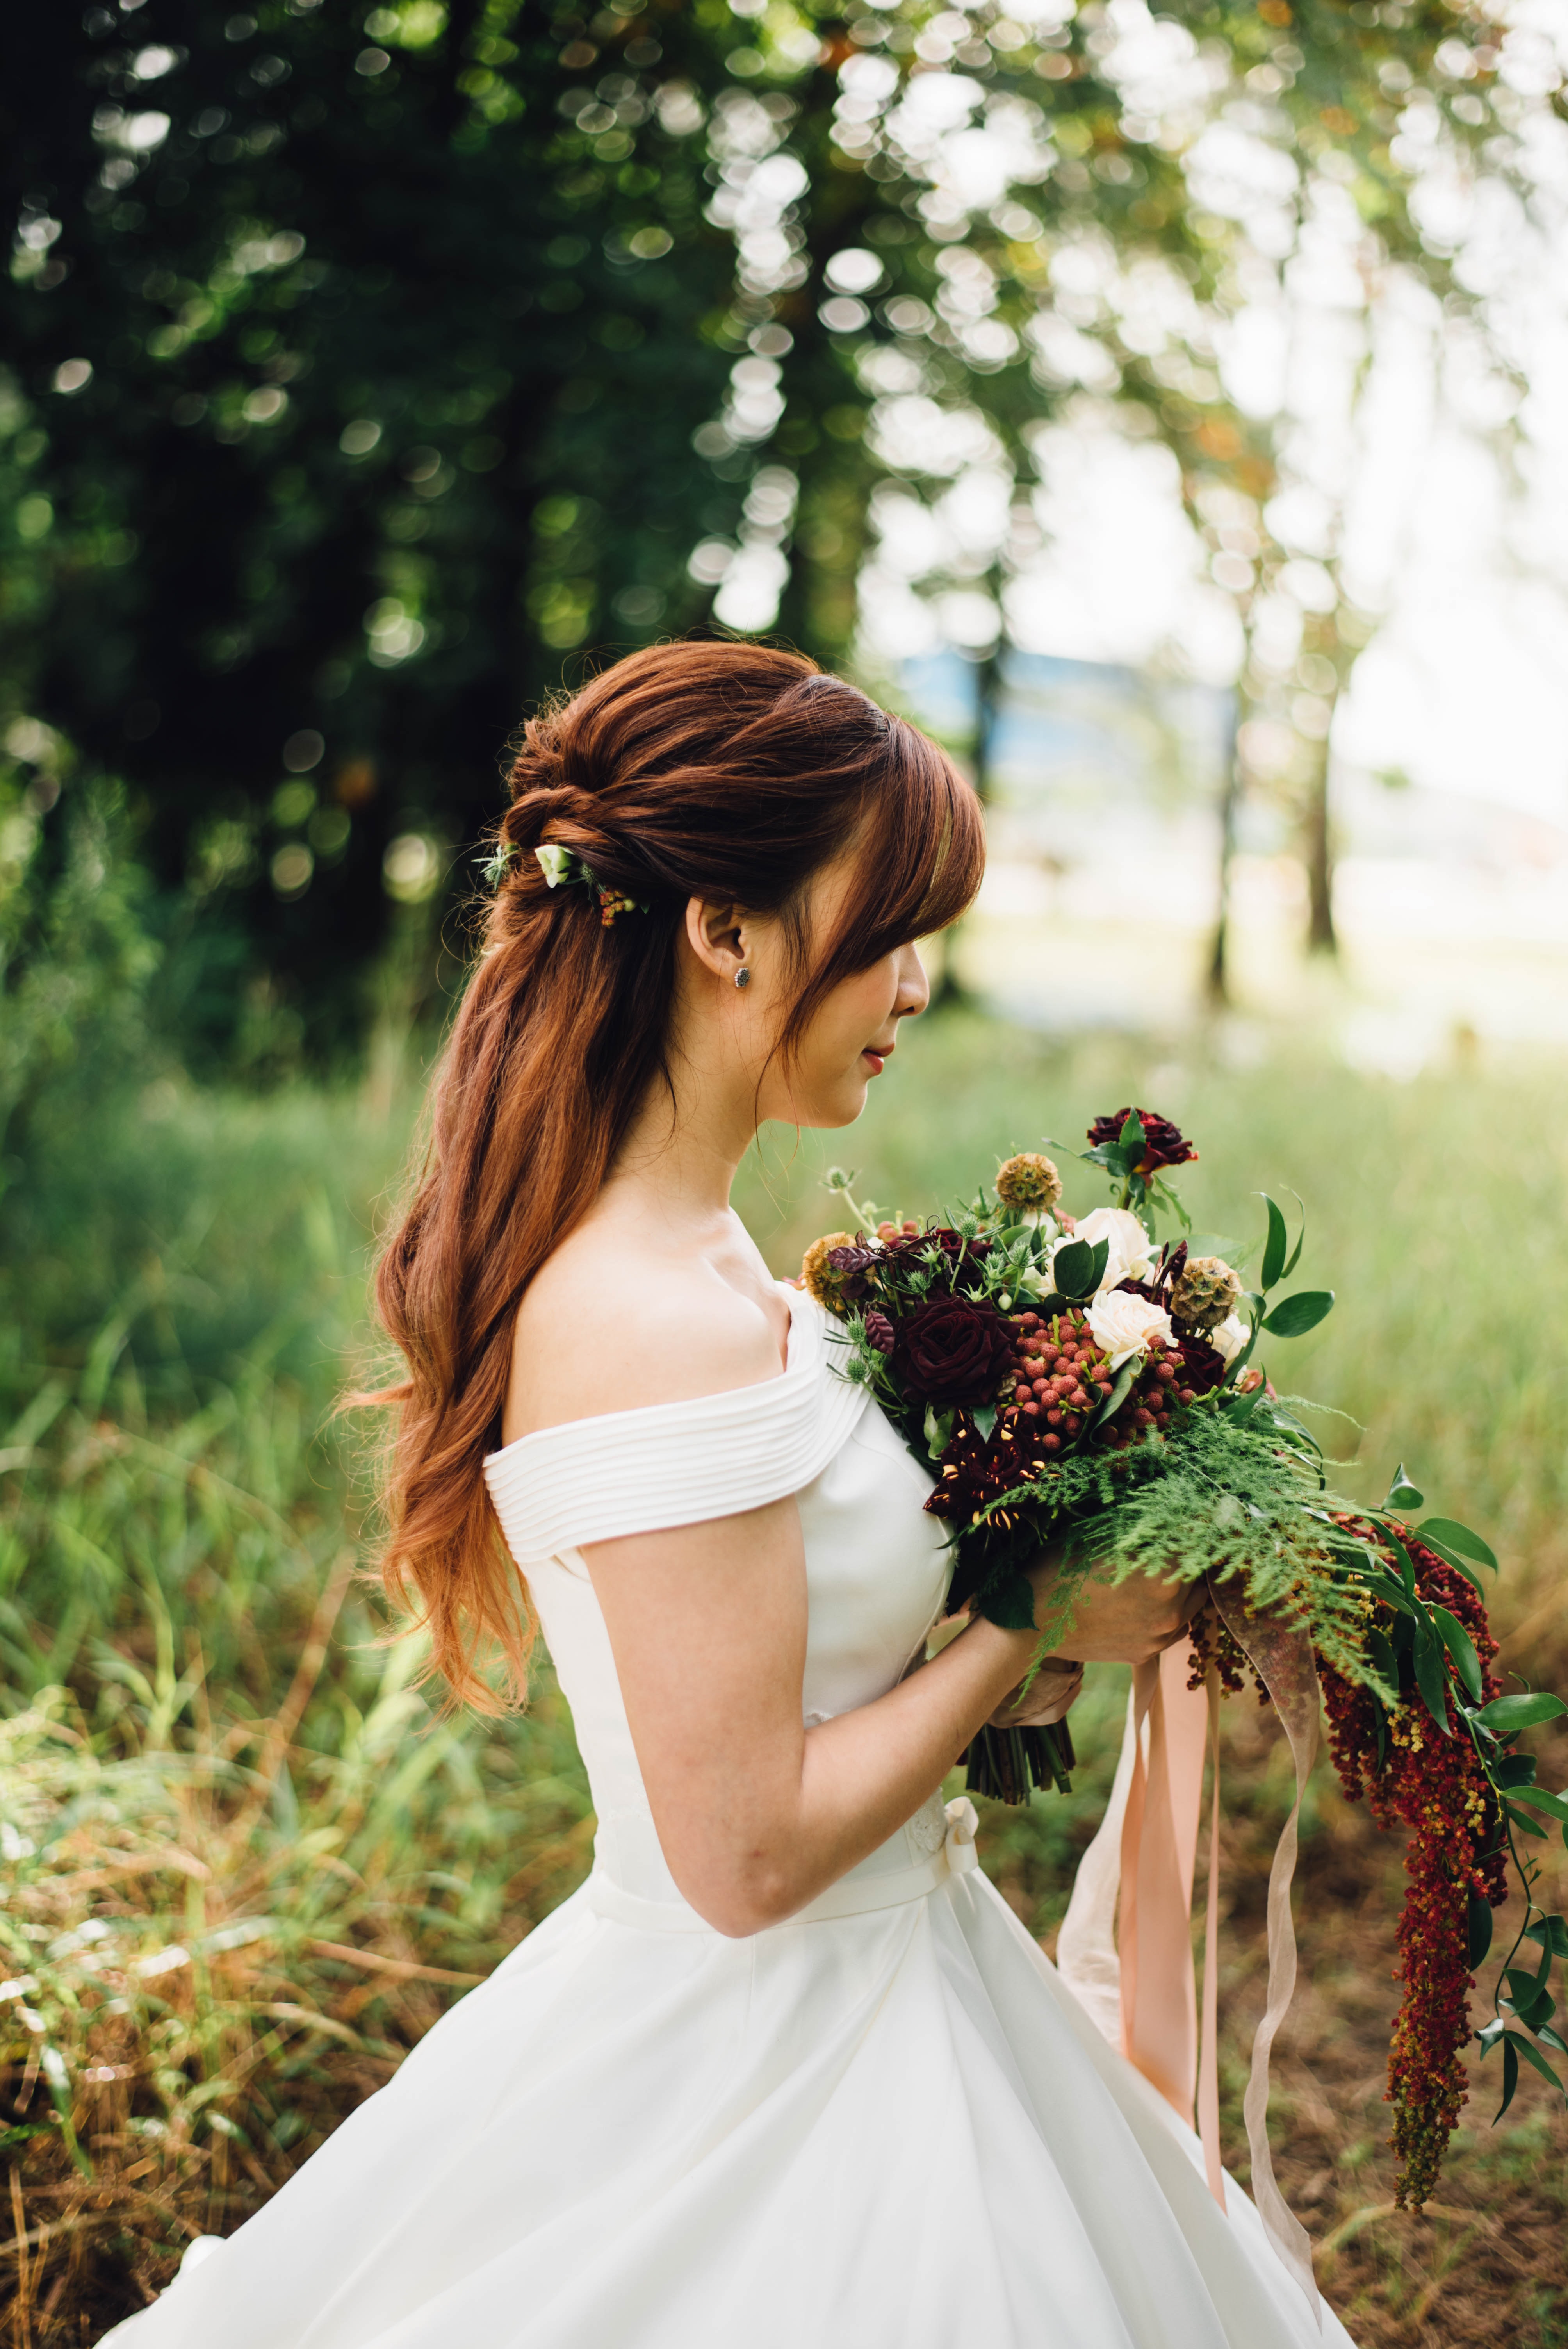 Portrait d'une mariée en robe blanche regardant son beau bouquet dans la forêt.